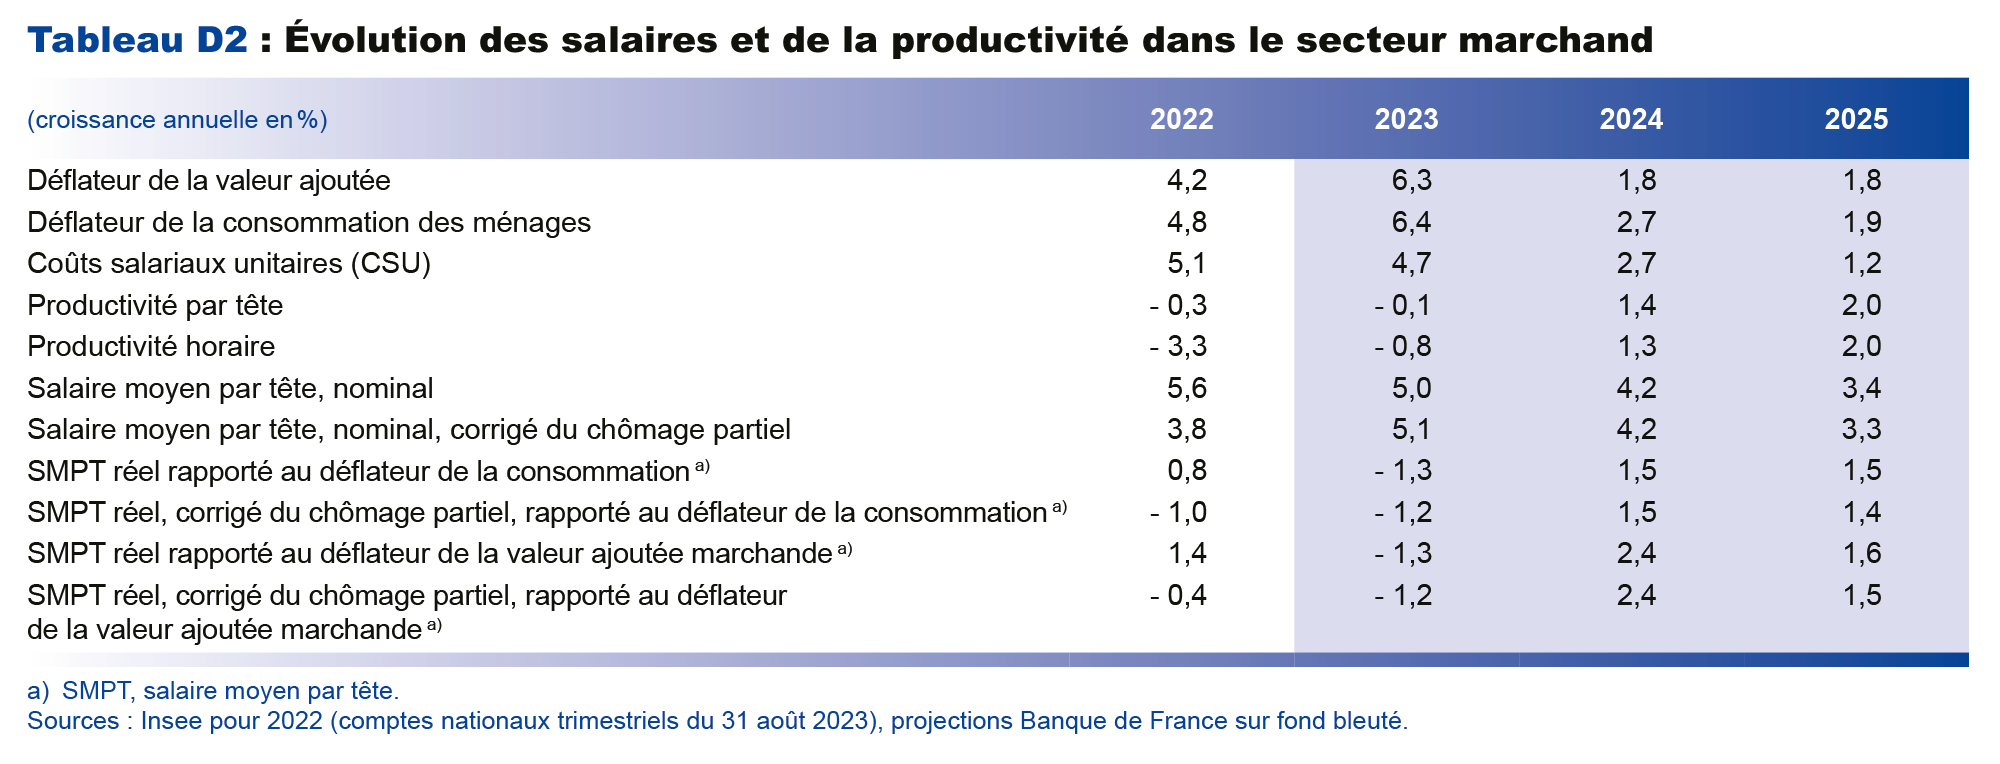  Projections macroéconomiques septembre 2023 - Evolution du salaire et de la productivité dans le secteur marchand